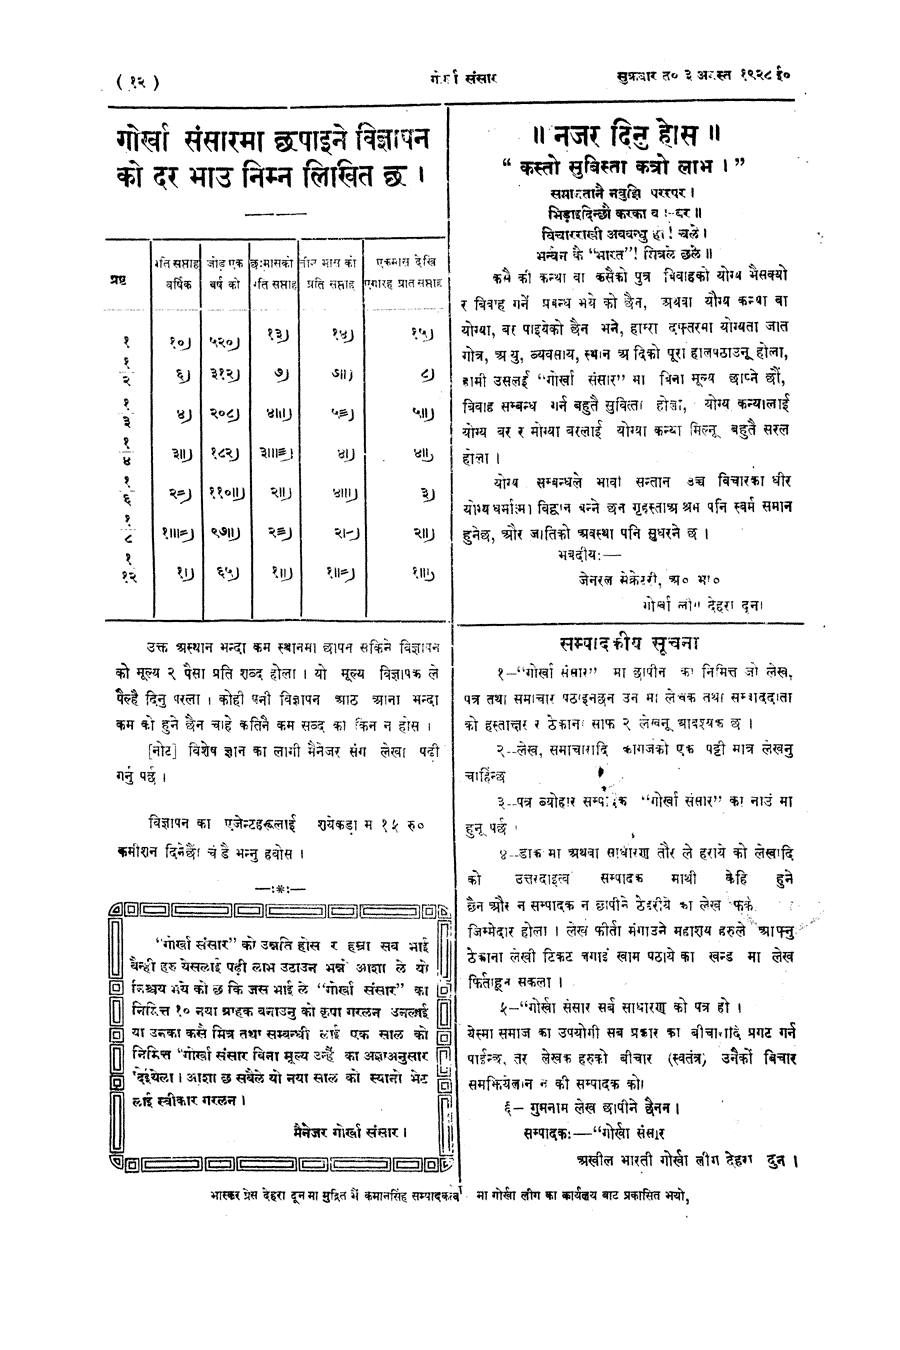 Gorkha Sansar, 3 Aug 1928, page 12